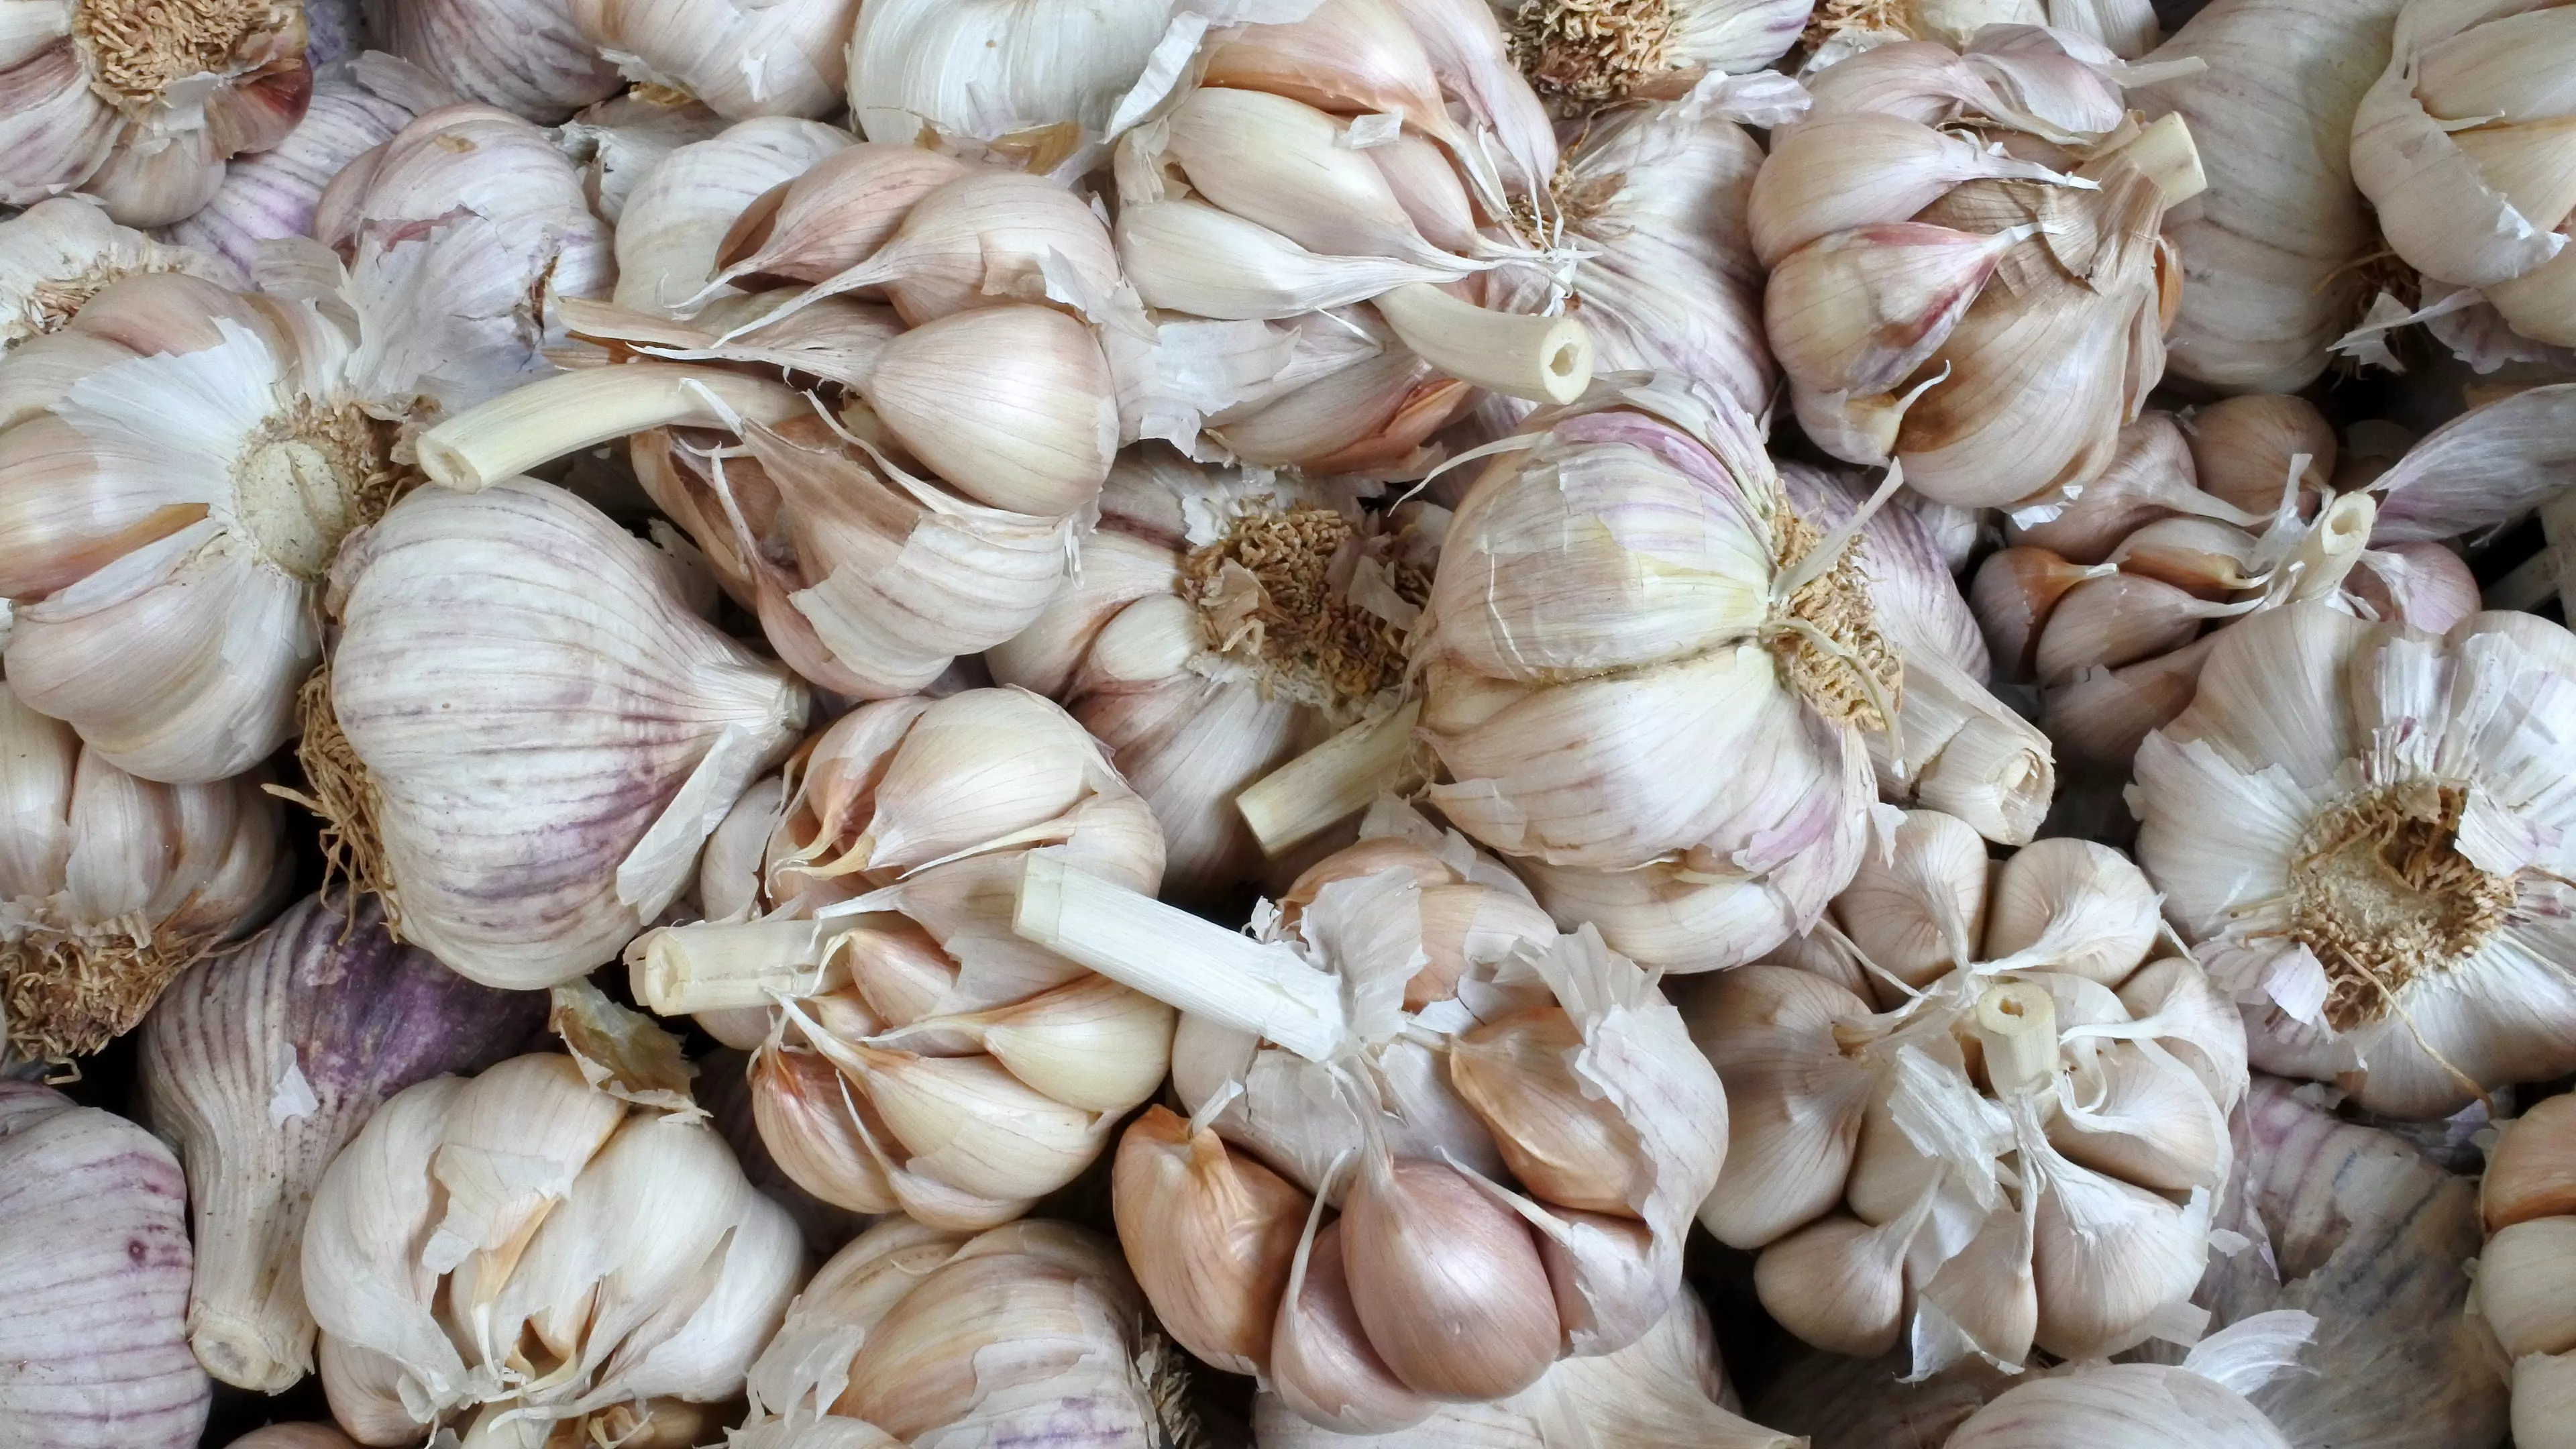 Gynaecologist Warns Women Not To Put Garlic In Their Vaginas